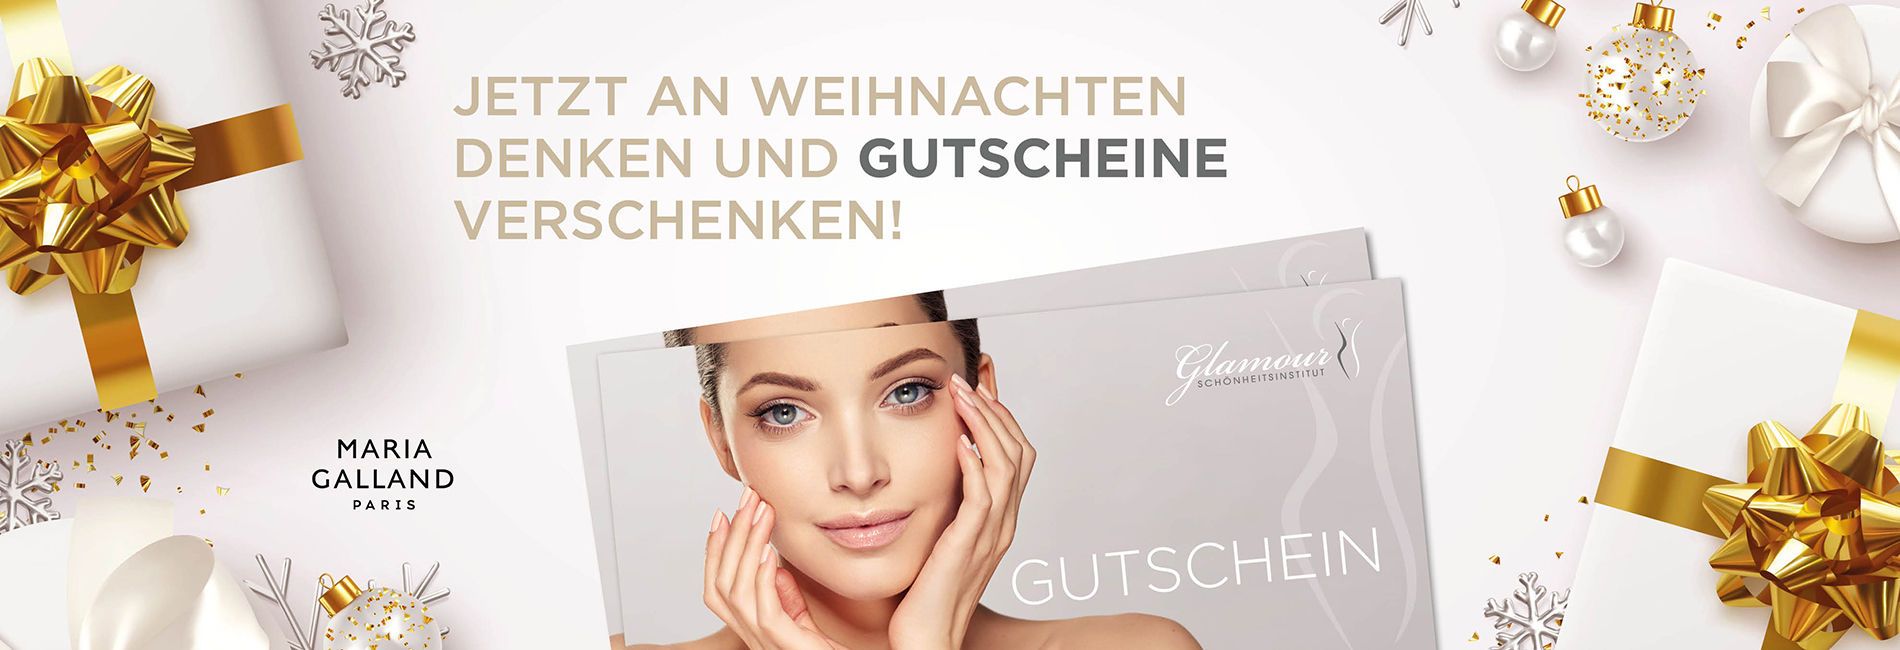 Glamour Schönheitsinstitut Webbanner Gutscheine 1900×650